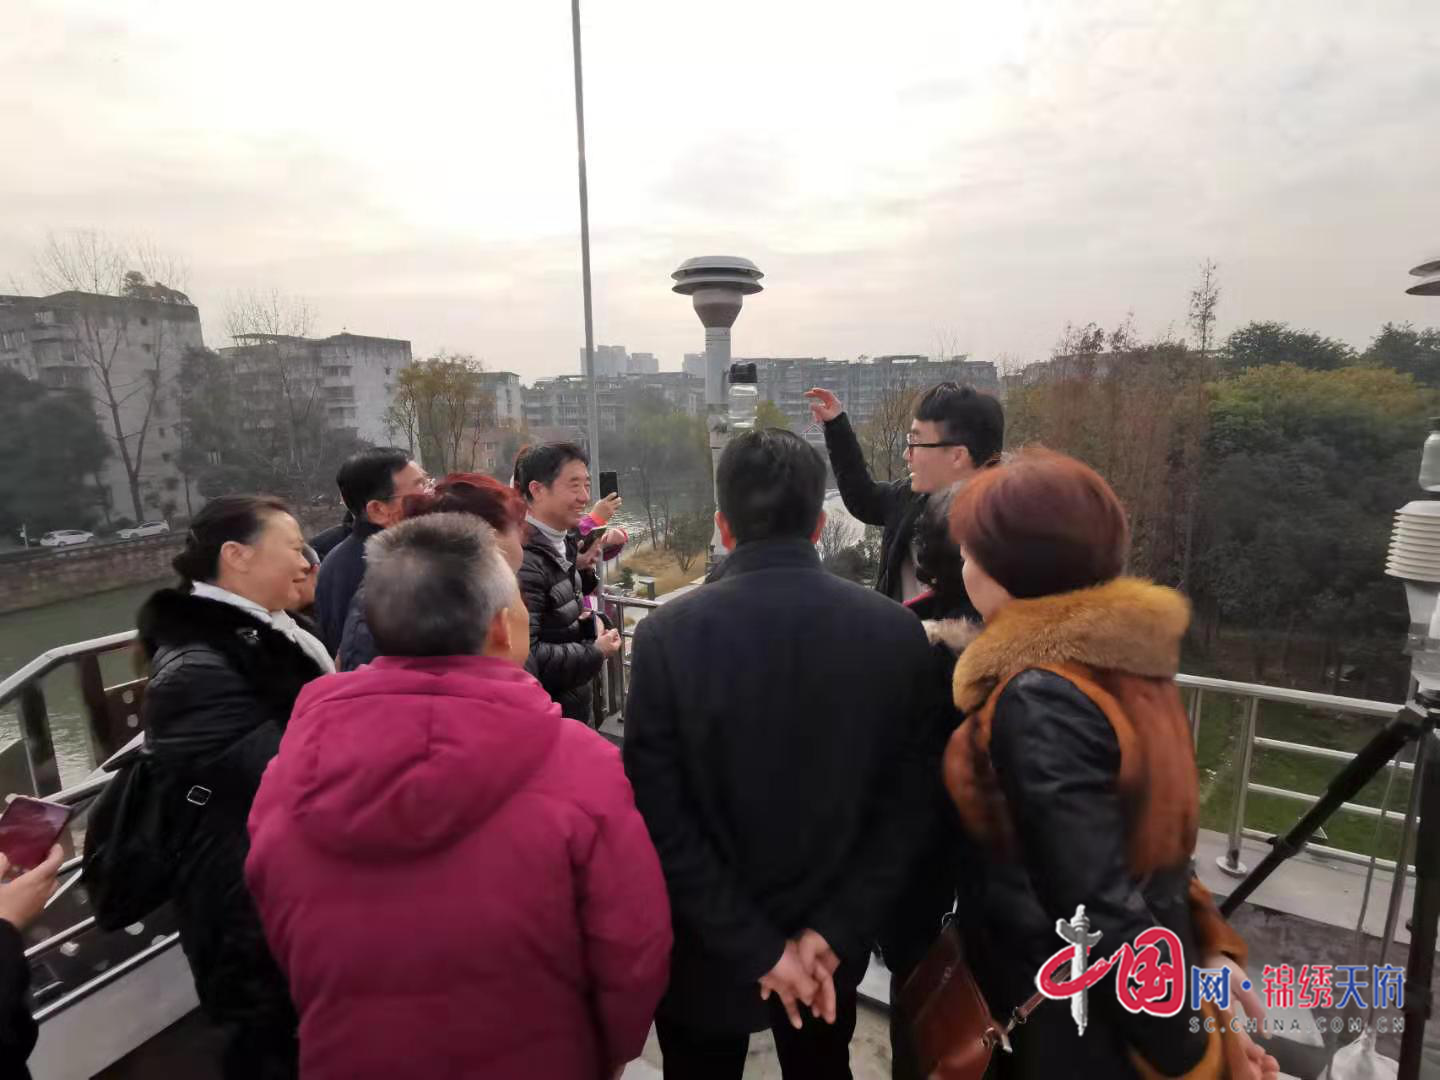 成都青羊举行环保设施公众开放日活动 完美体育官方APP下载- 地方动态 - 中国